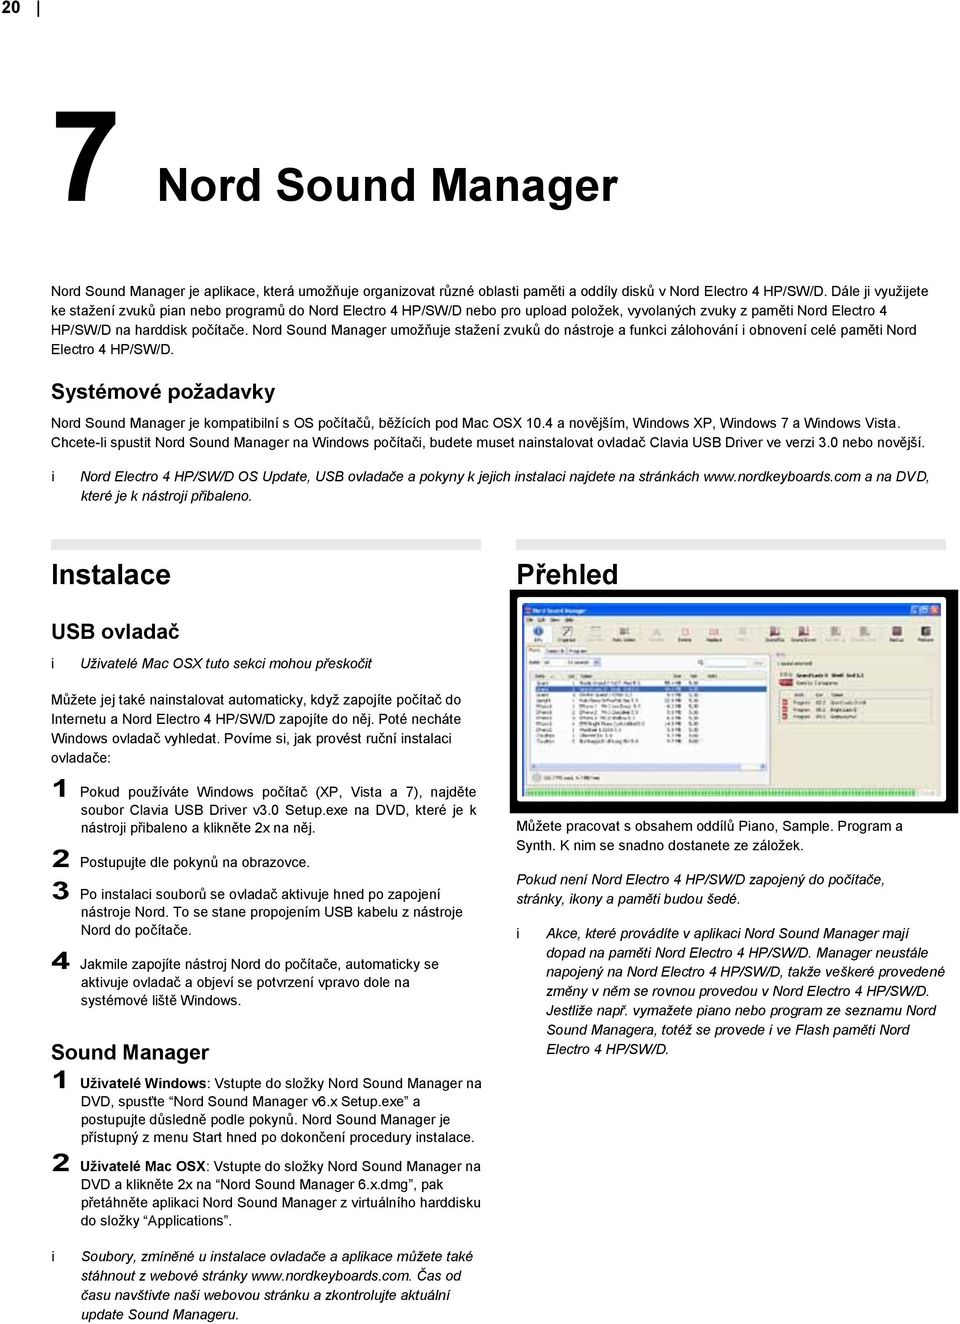 Nord Sound Manager umožňuje stažení zvuků do nástroje a funkc zálohování obnovení celé pamět Nord Electro 4 HP/SW/D.